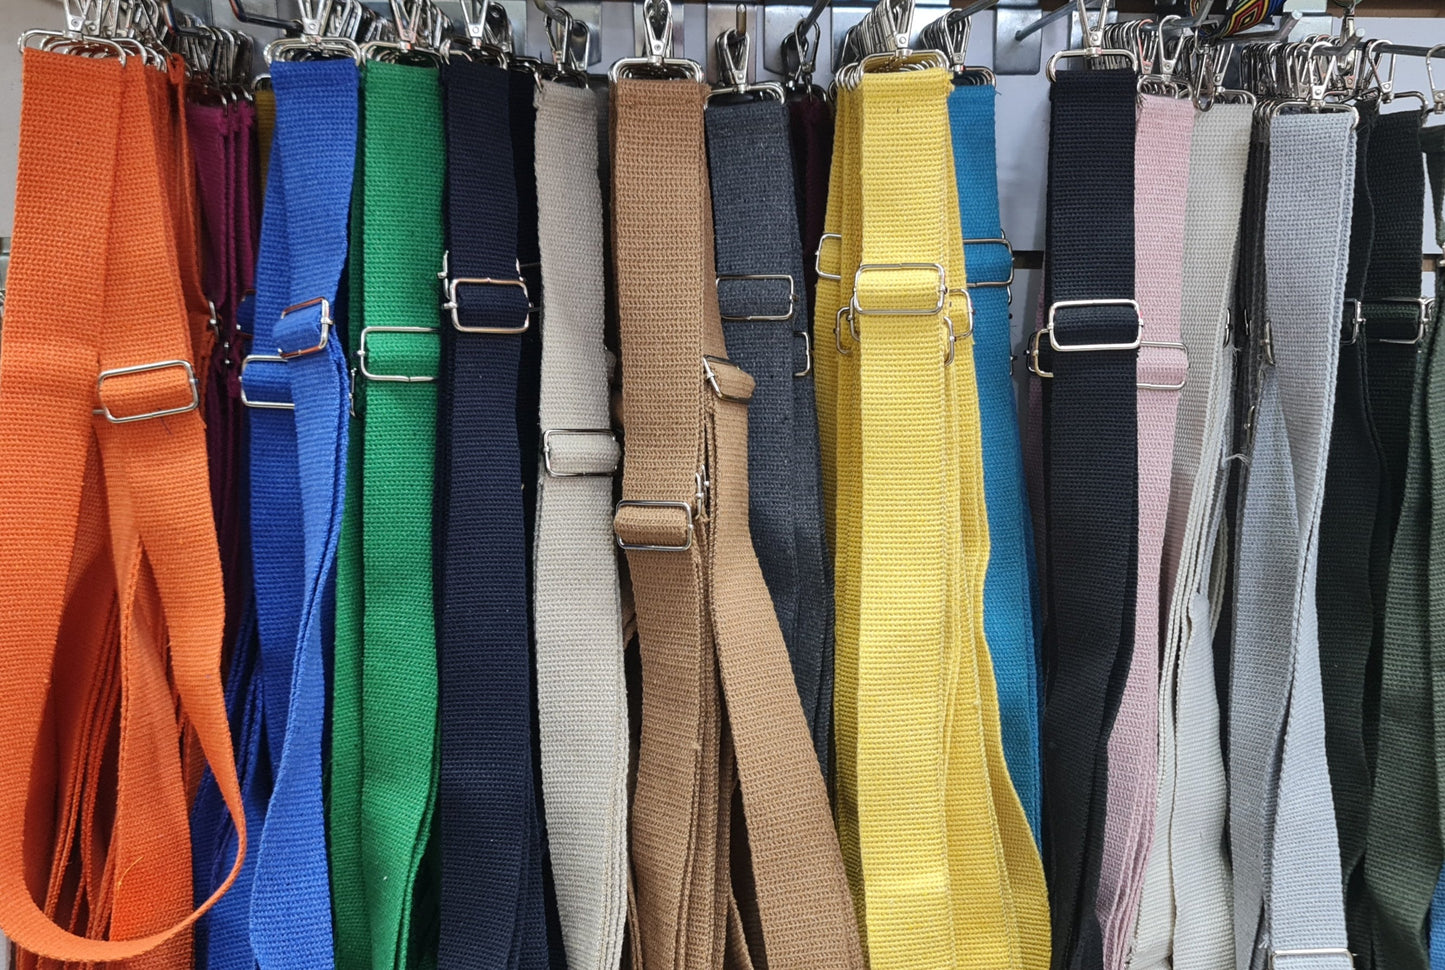 Düz Renk Dokuma Çanta Askısı (115 cm)